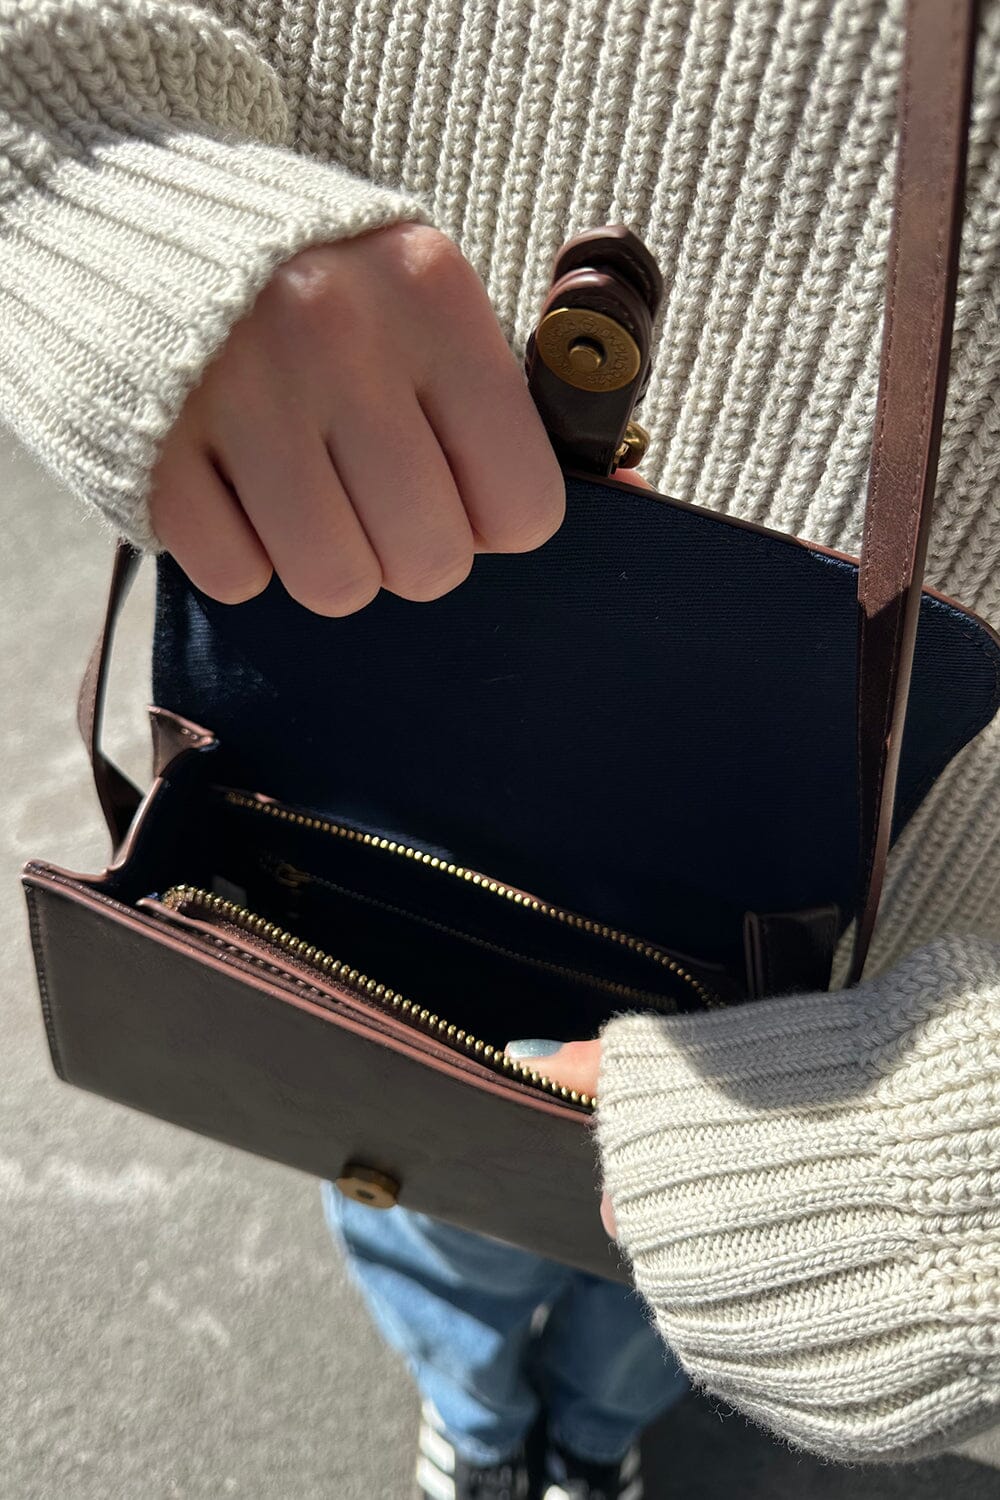 Shoulder Bag – Brandy Melville UK